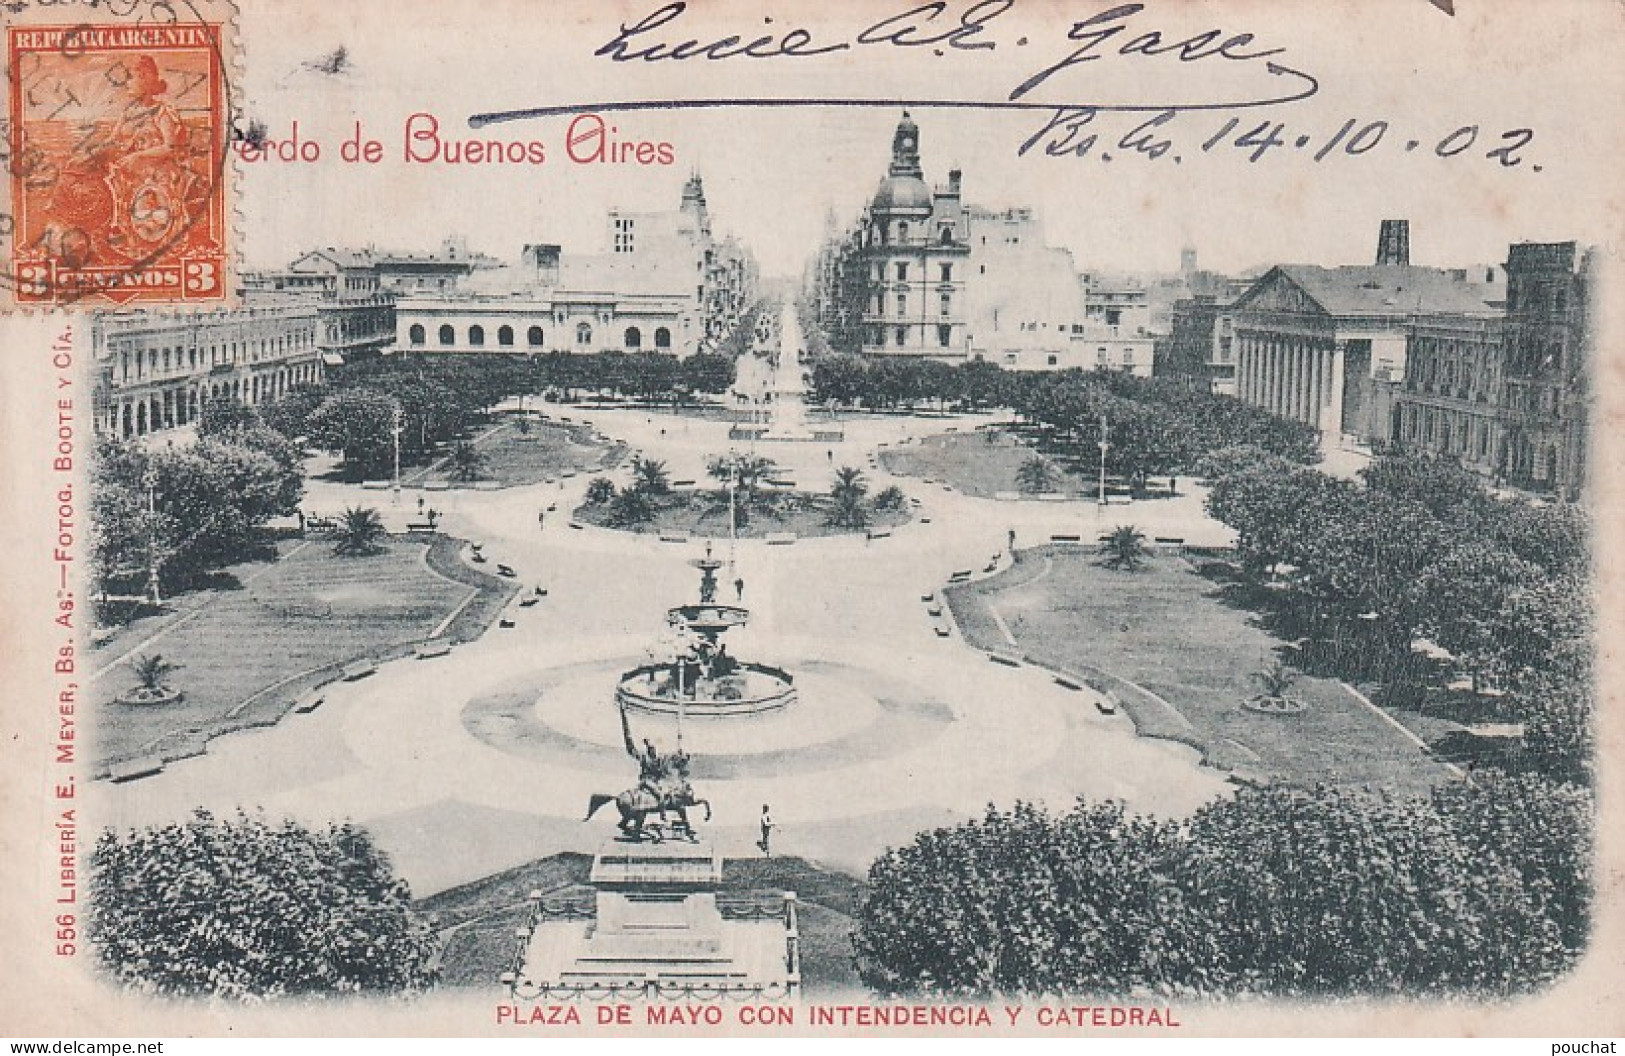 DE Nw28- PLAZA DE MAYO CON INTENDENCIA Y CATEDRAL - RECUERDO DE BUENOS AIRES - ARGENTINA - OBLITERATION 1902 - Argentine